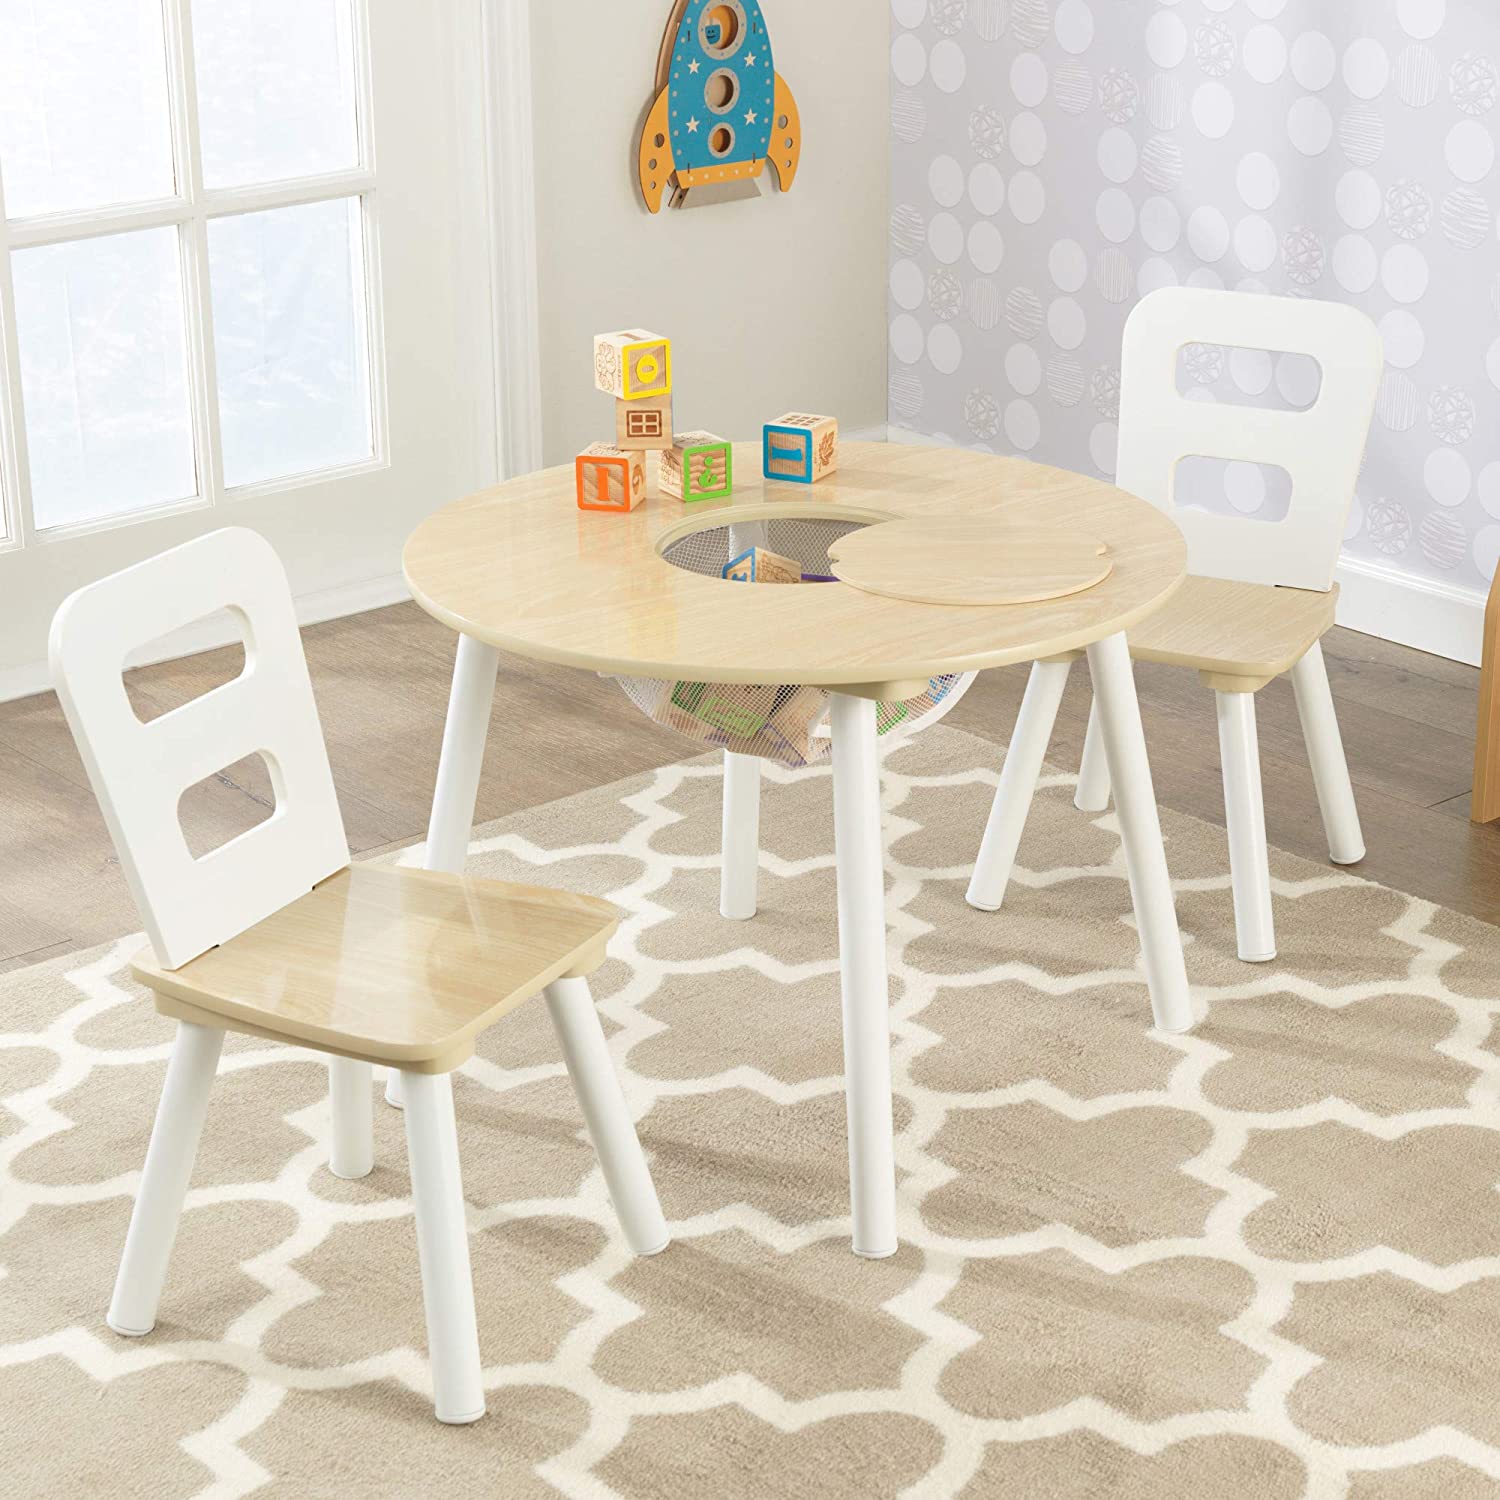  Mesa y silla infantil de madera - inmobiliario infantil